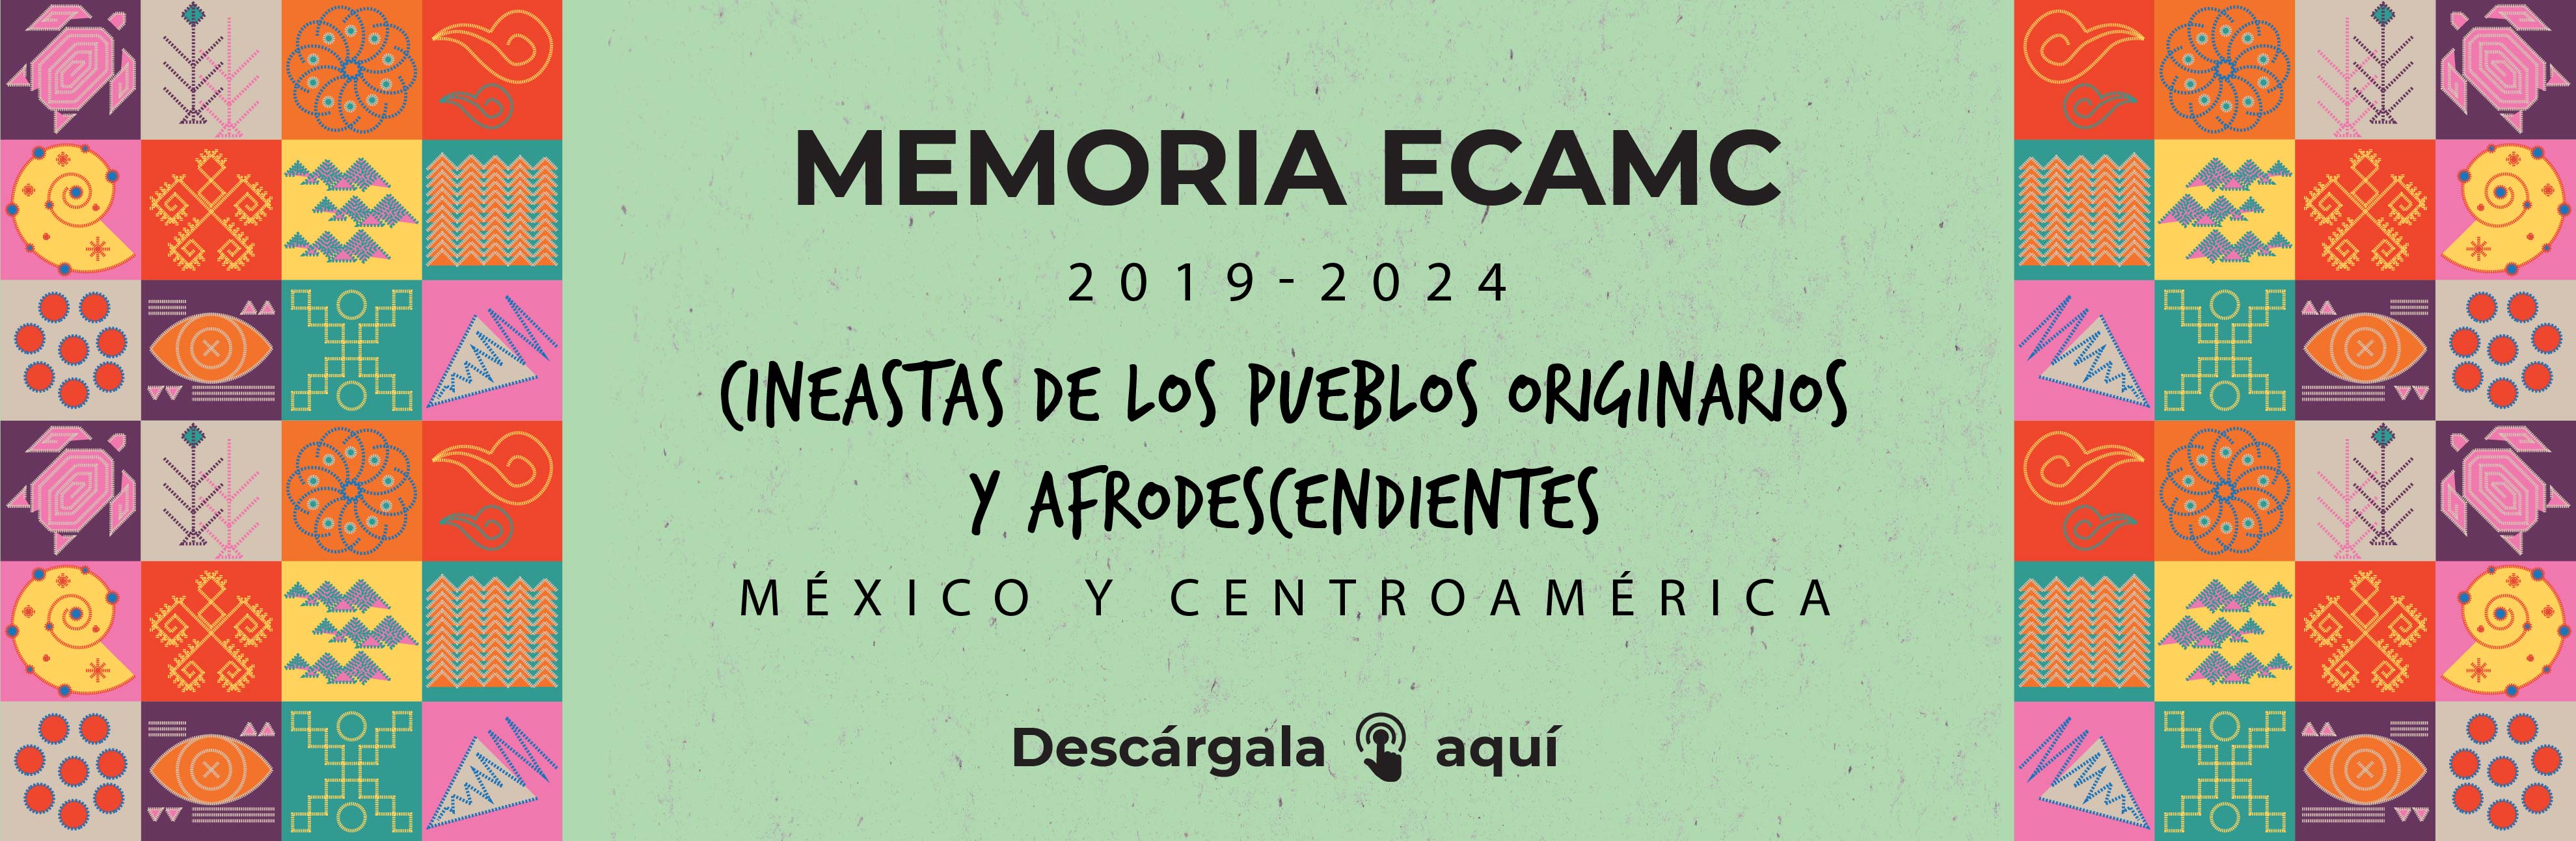 Memoria ECAMC 2019-2024